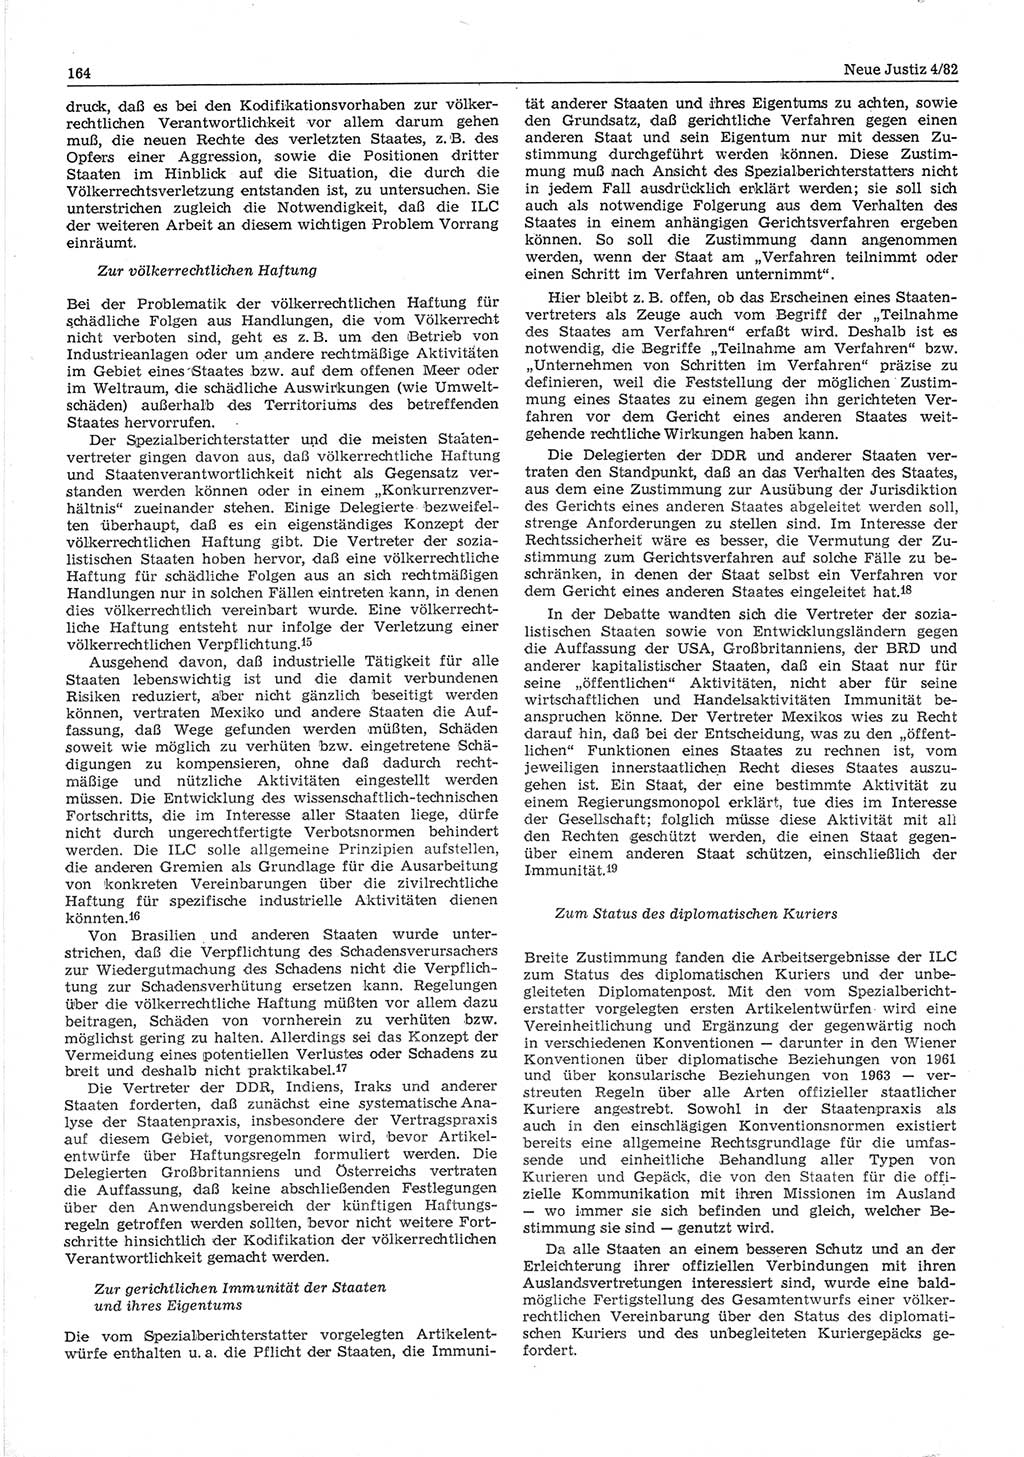 Neue Justiz (NJ), Zeitschrift für sozialistisches Recht und Gesetzlichkeit [Deutsche Demokratische Republik (DDR)], 36. Jahrgang 1982, Seite 164 (NJ DDR 1982, S. 164)